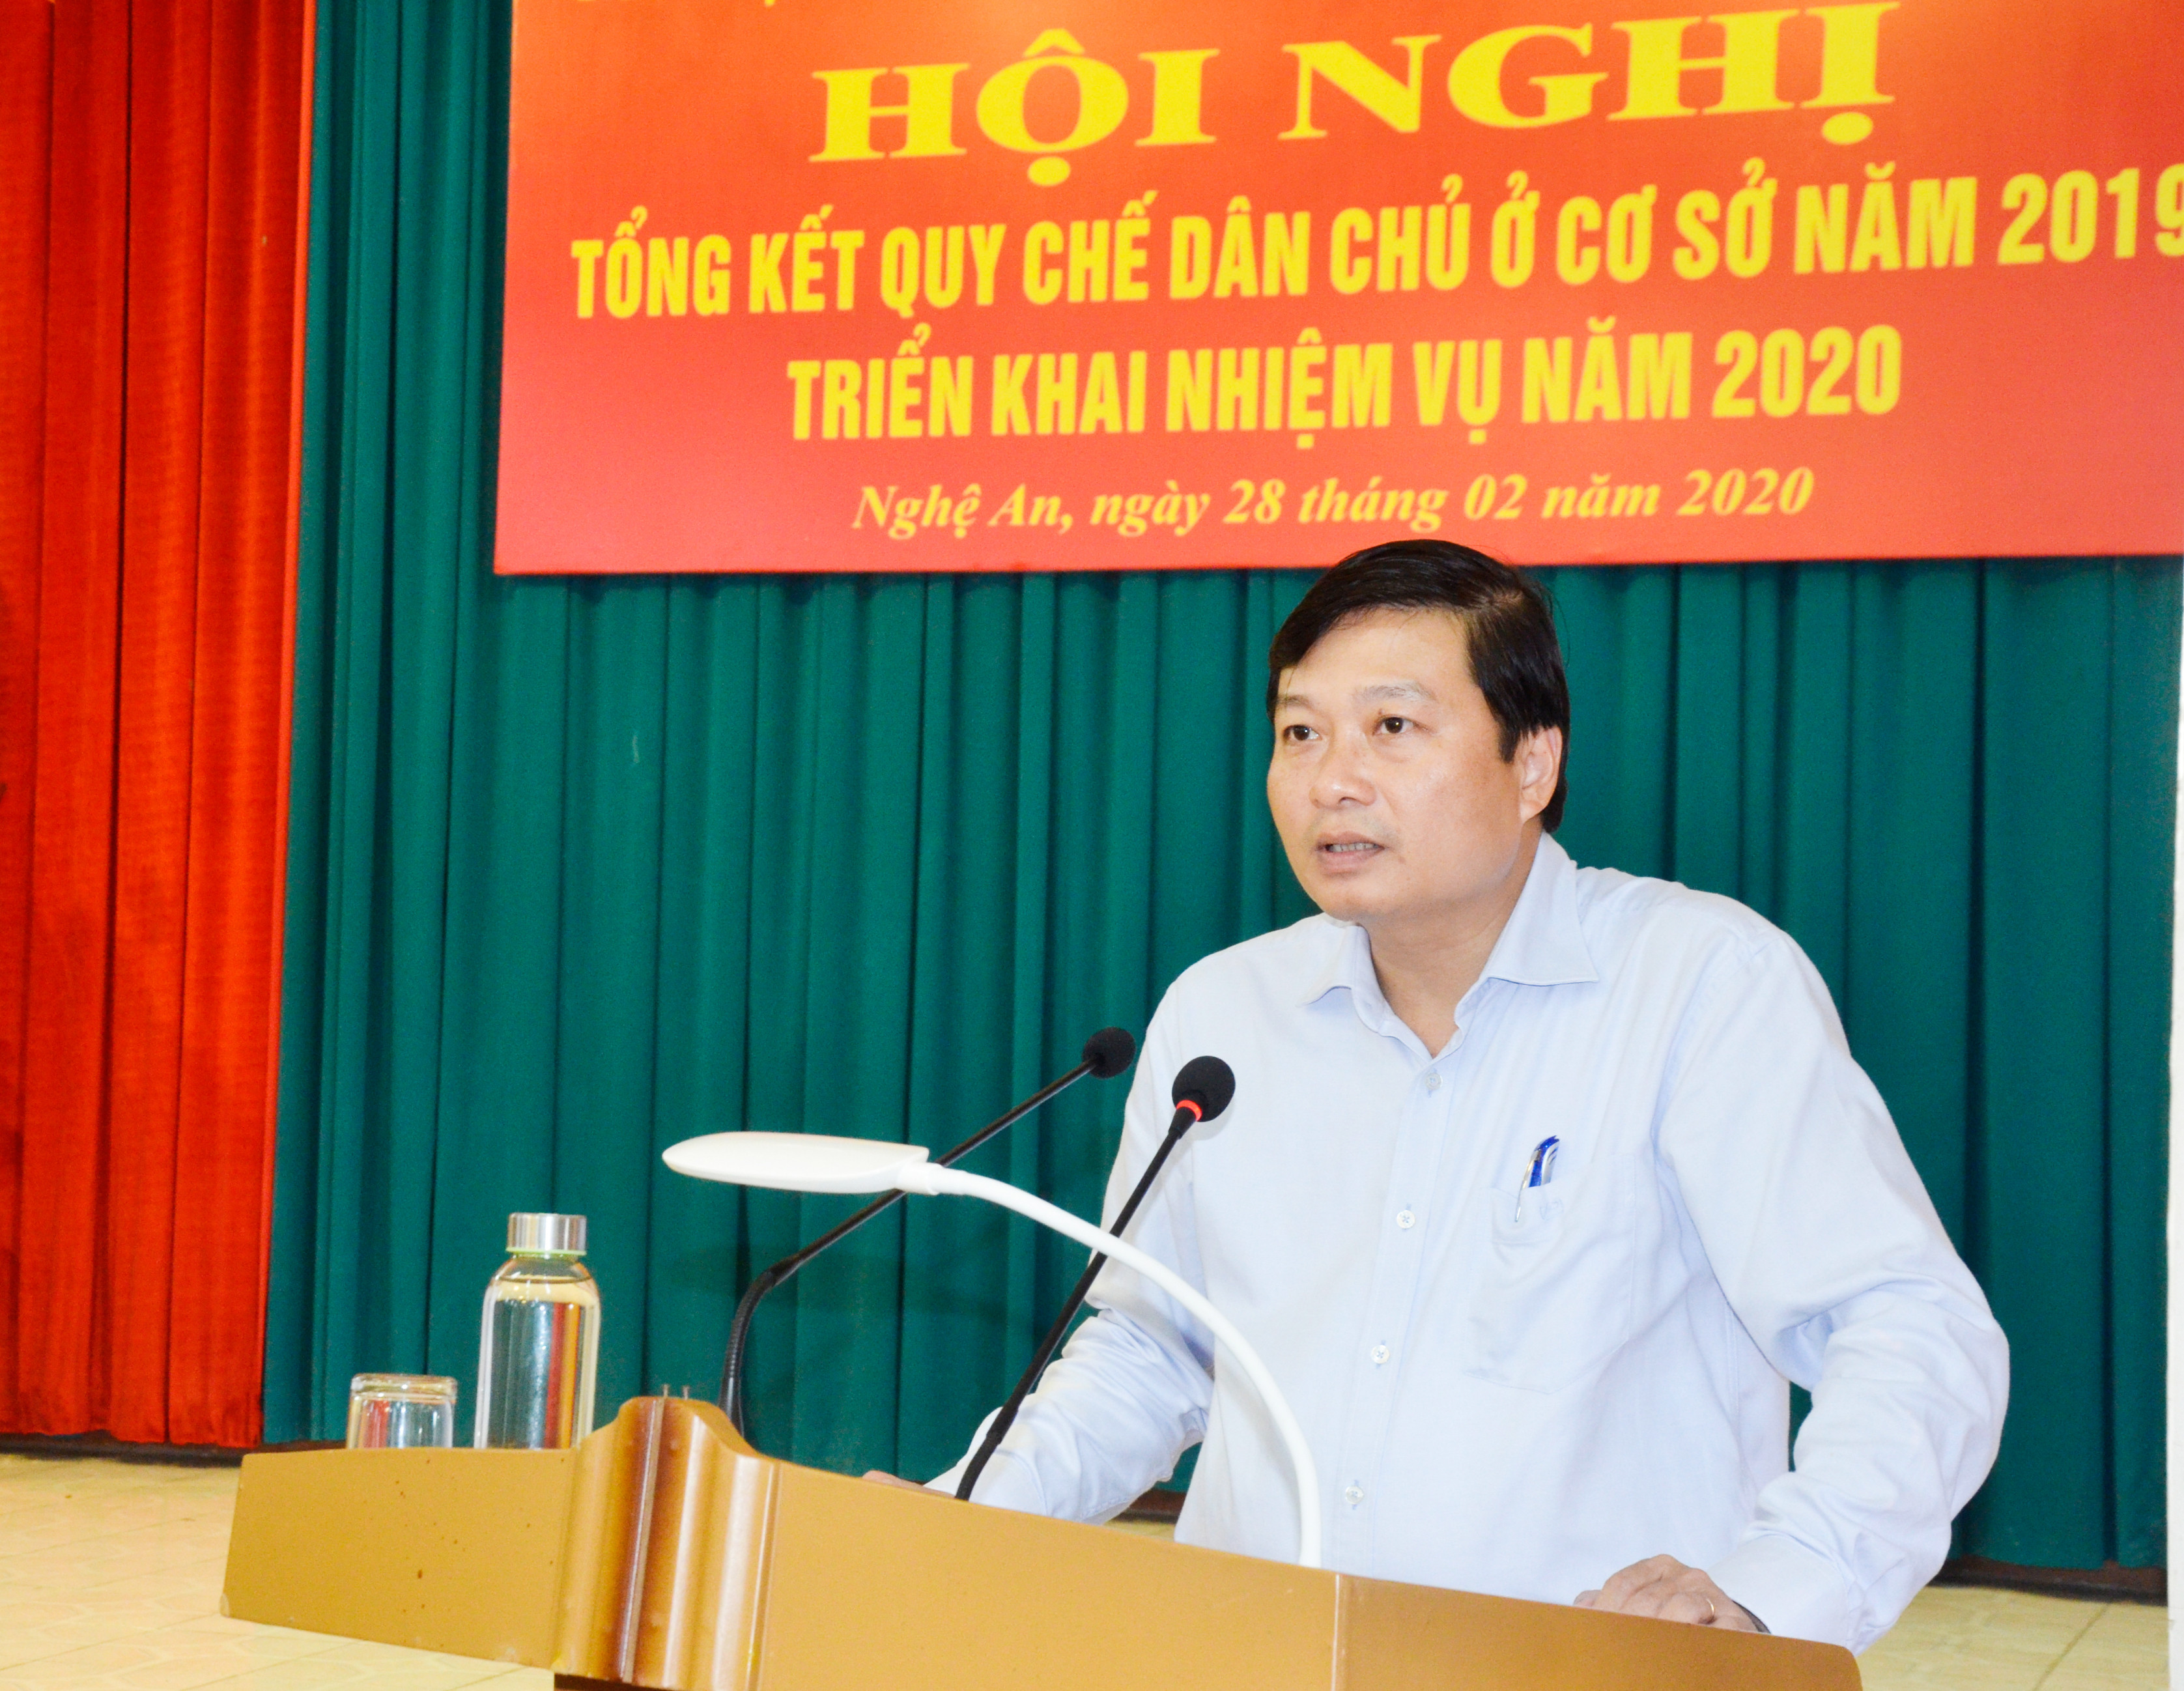 Phó Chủ tịch UBND tỉnh Lê Hồng Vinh phát biểu chỉ đạo hội nghị. Ảnh: Thanh Lê